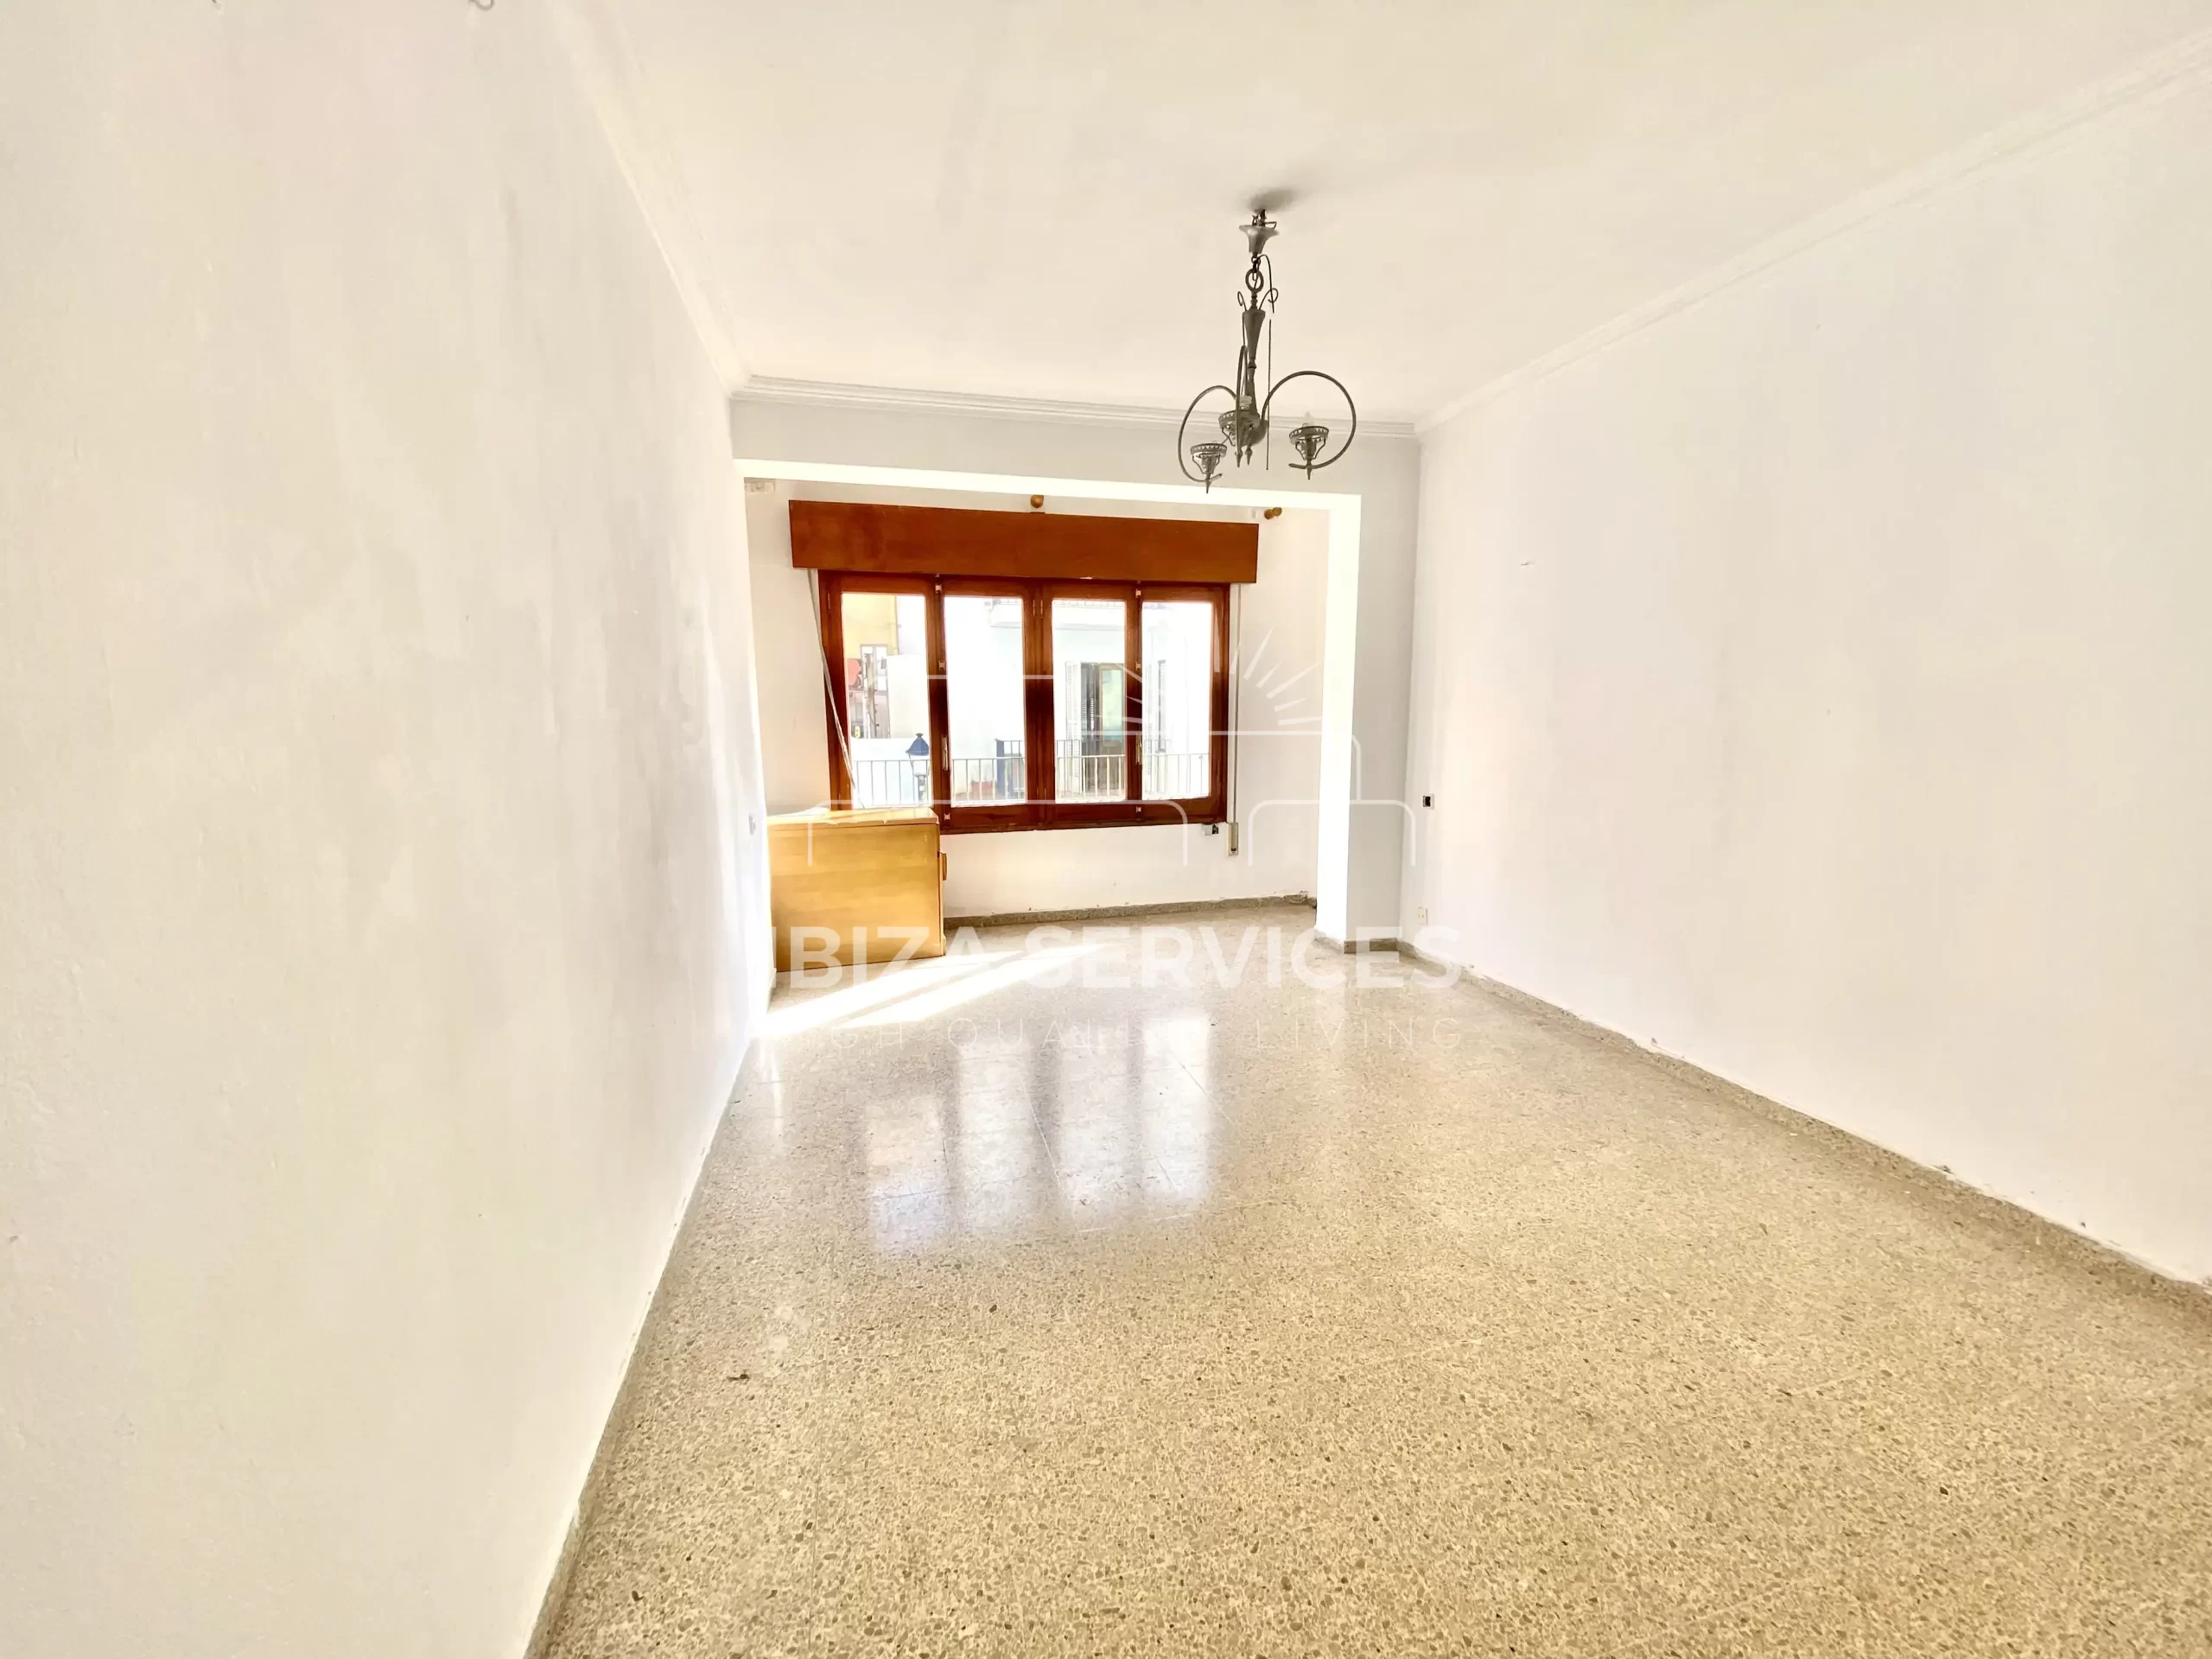 En venta apartamento de 3 dormitorios a reformar en Ibiza ciudad